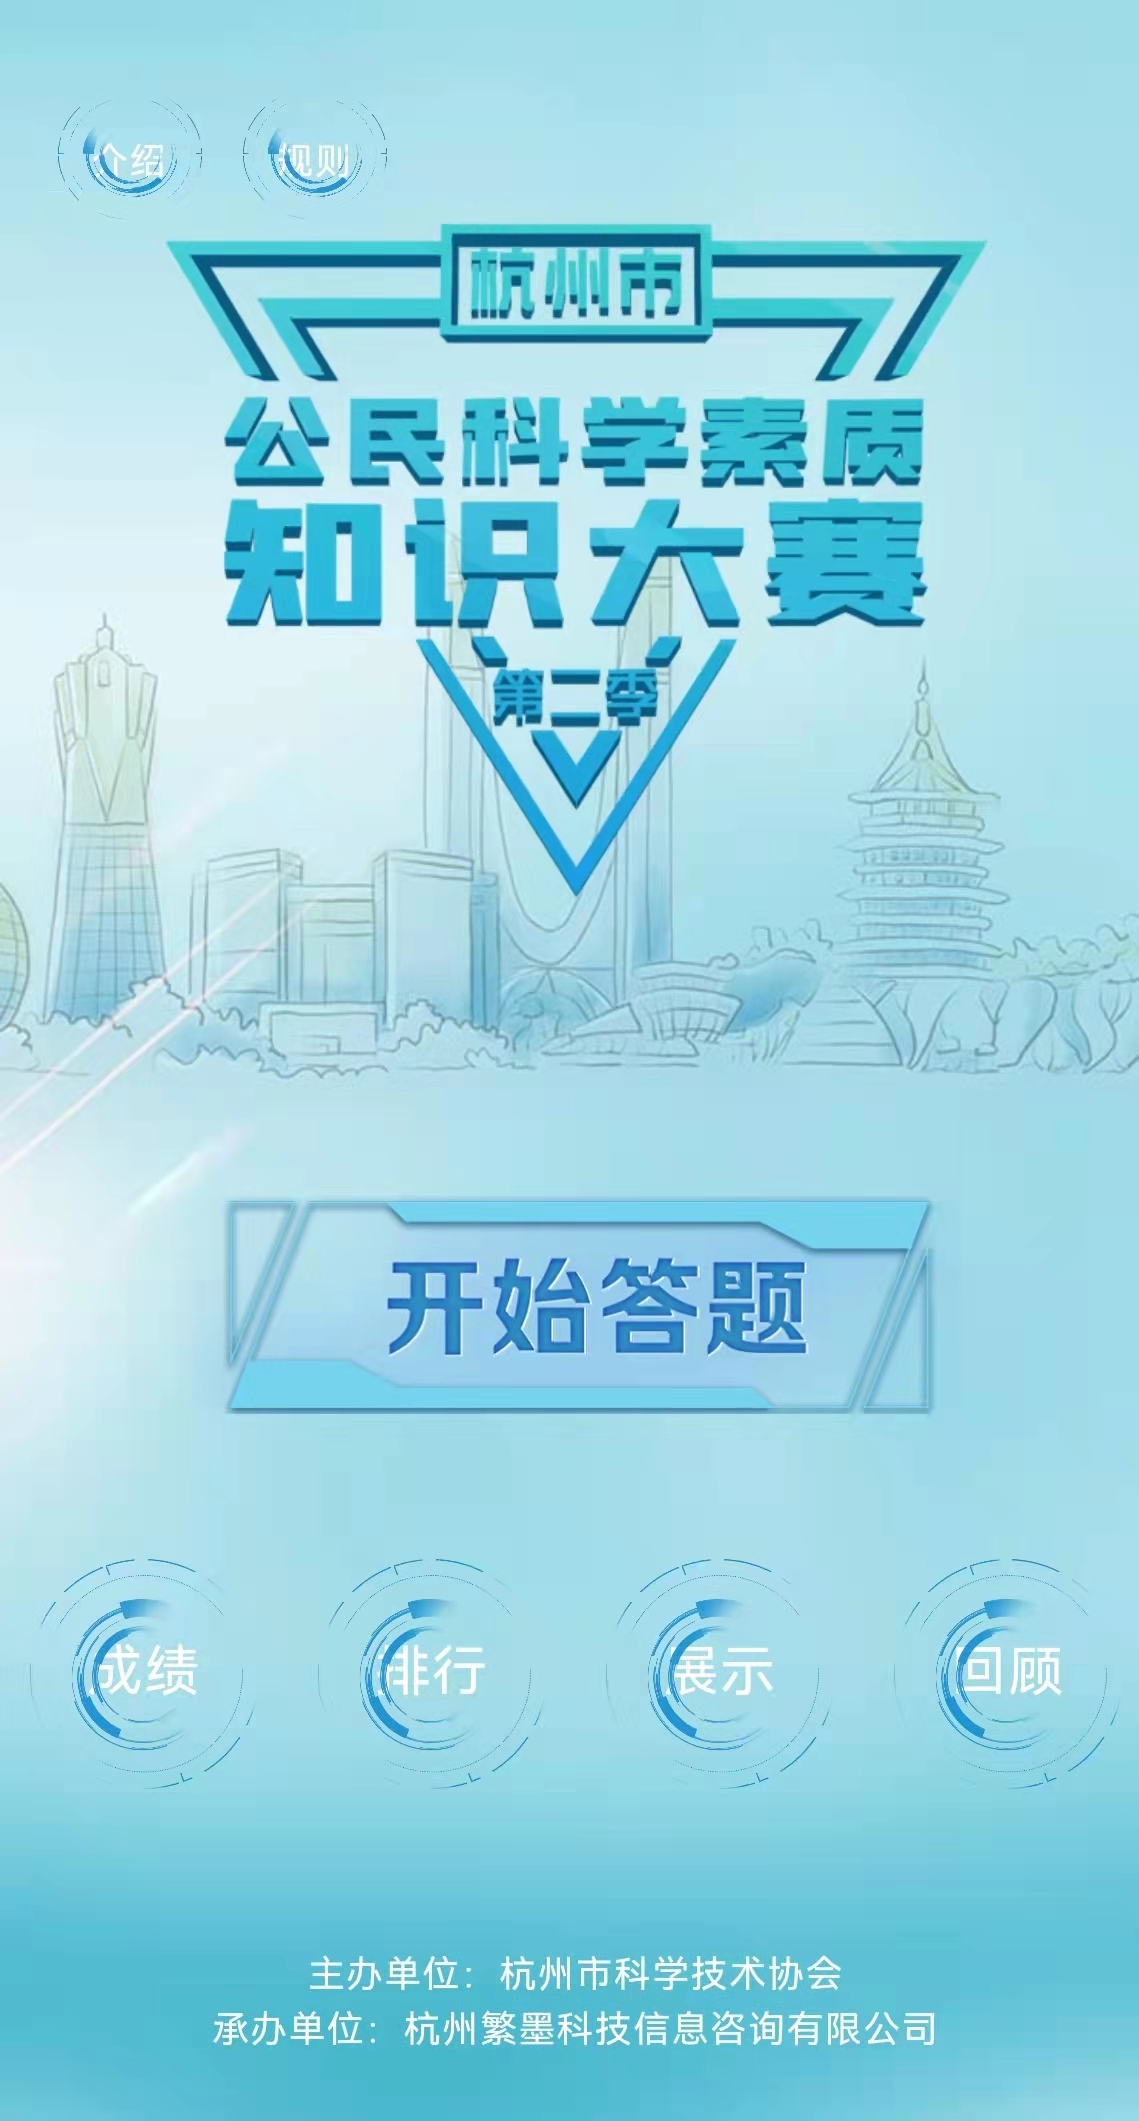 杭州市公民科学素质知识大赛第二季